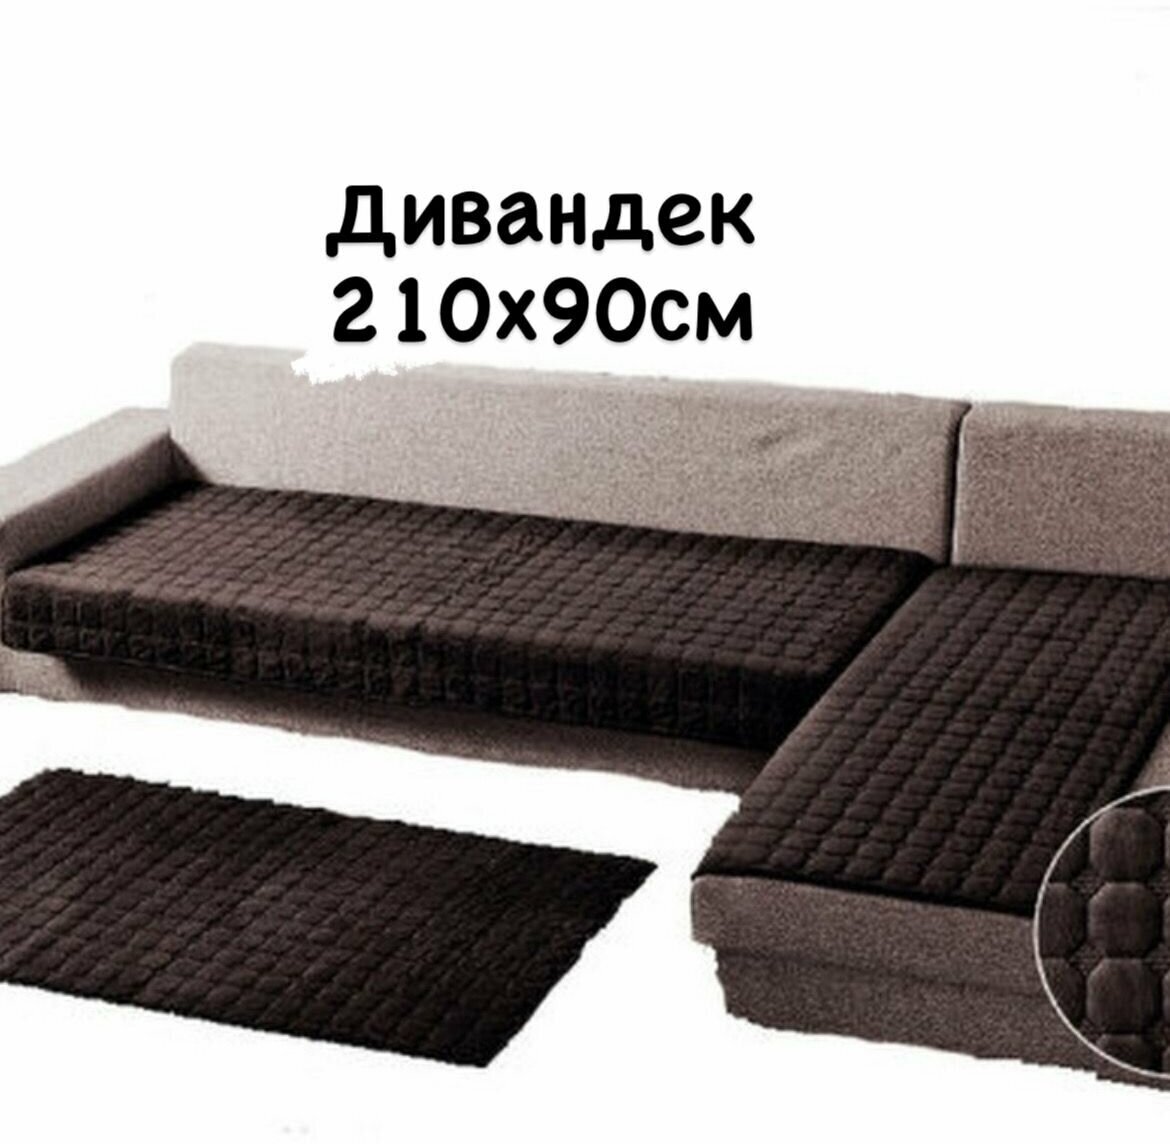 Накидка на диван дивандеки на угловой диван 90х210 см. - 1 шт, покрывало на диван